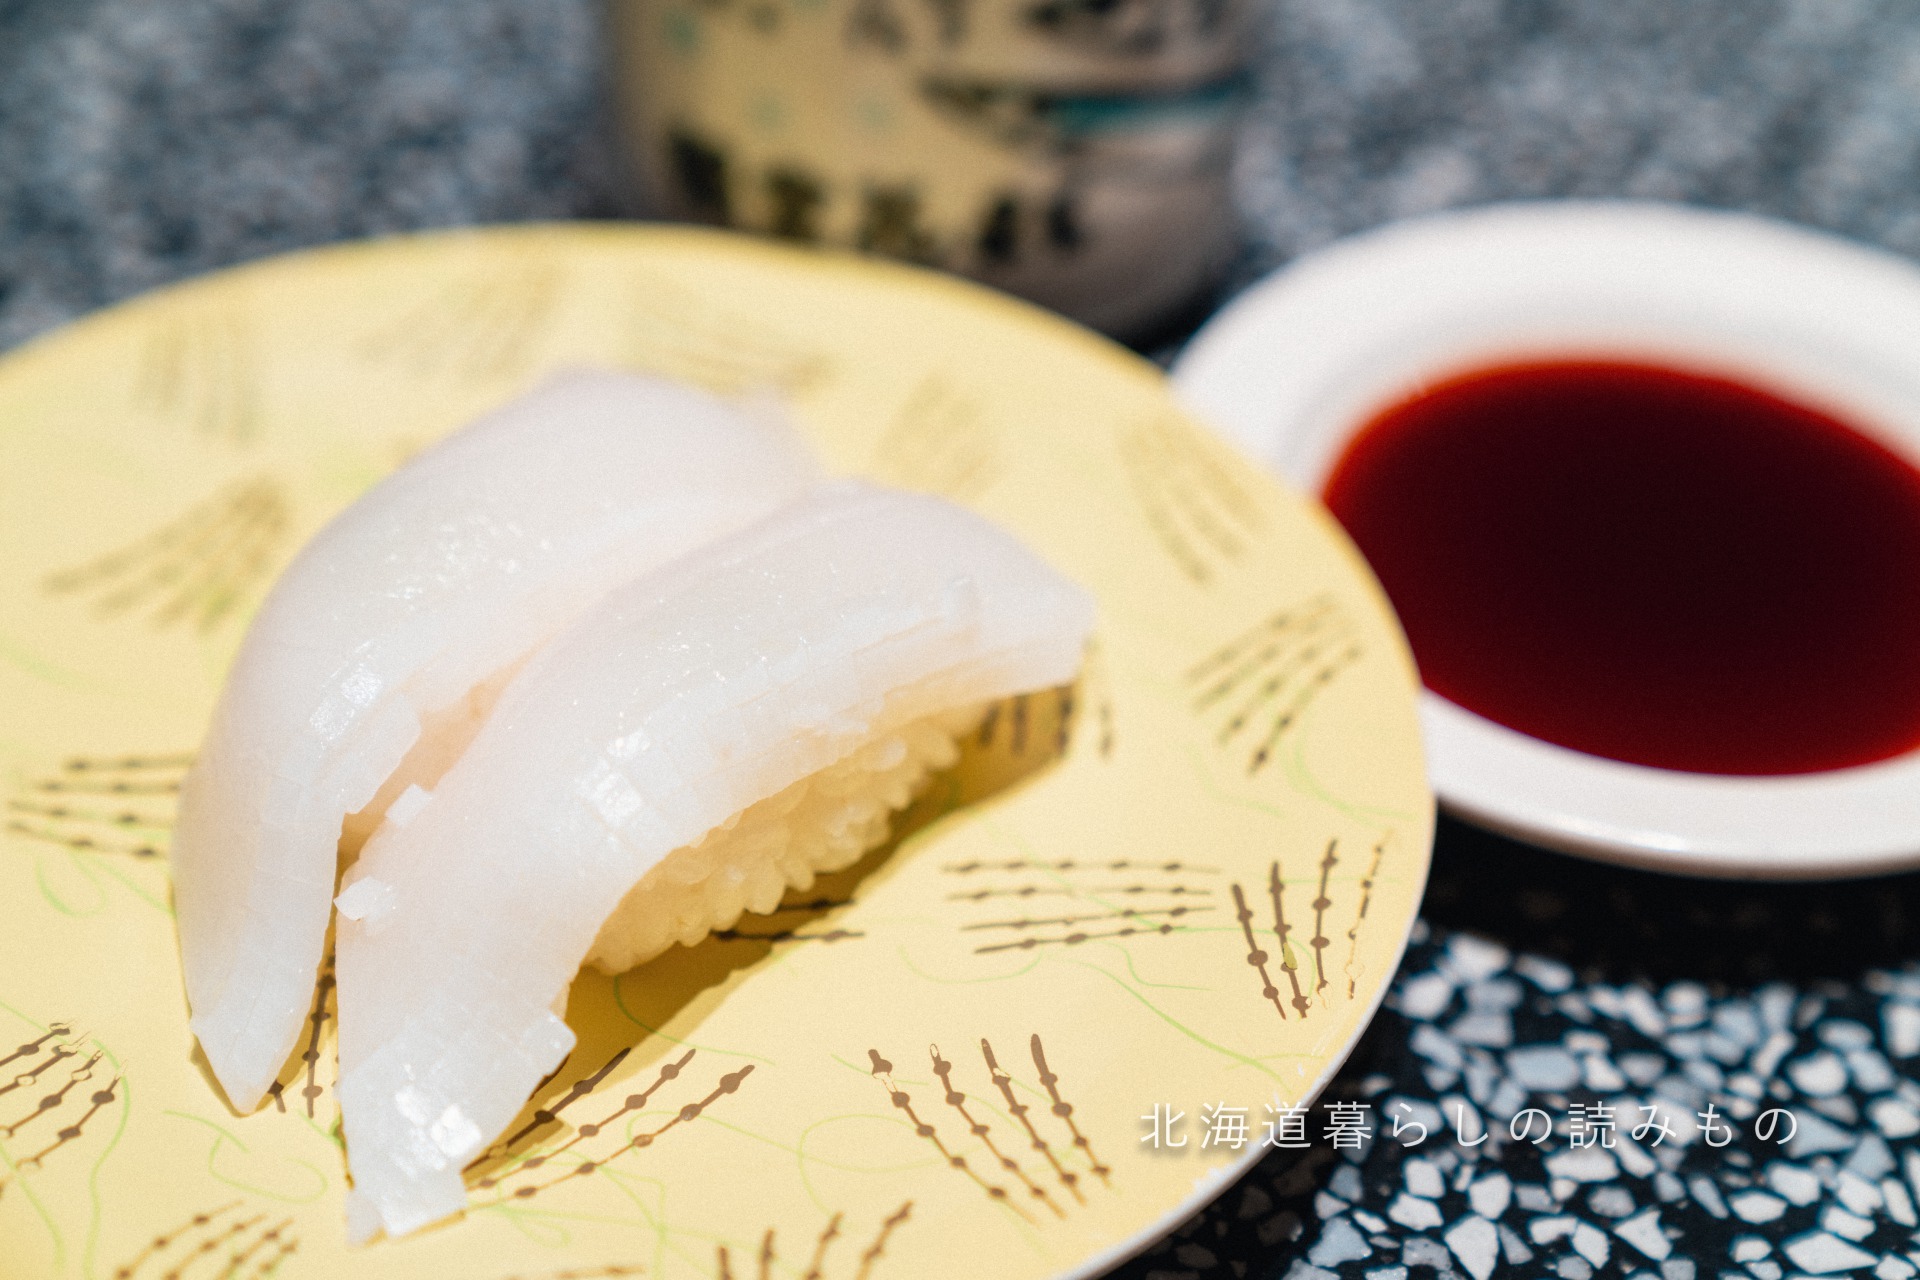 迴轉壽司根室花丸的菜單上的「赤墨魚晒鹽」